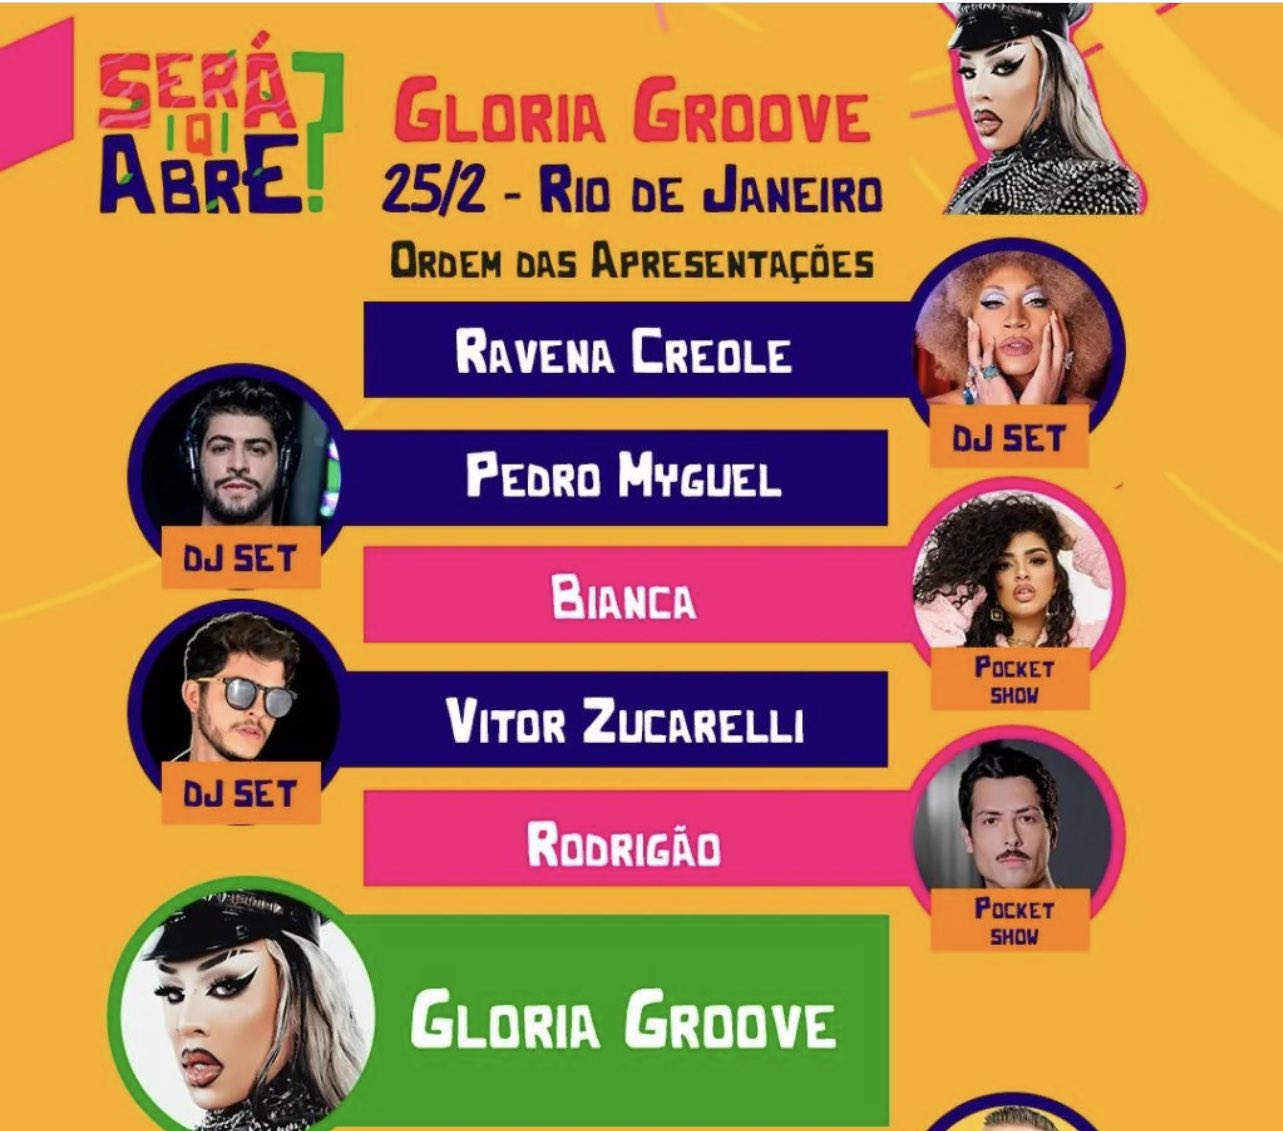 Line-up festival "Será Q Abre"